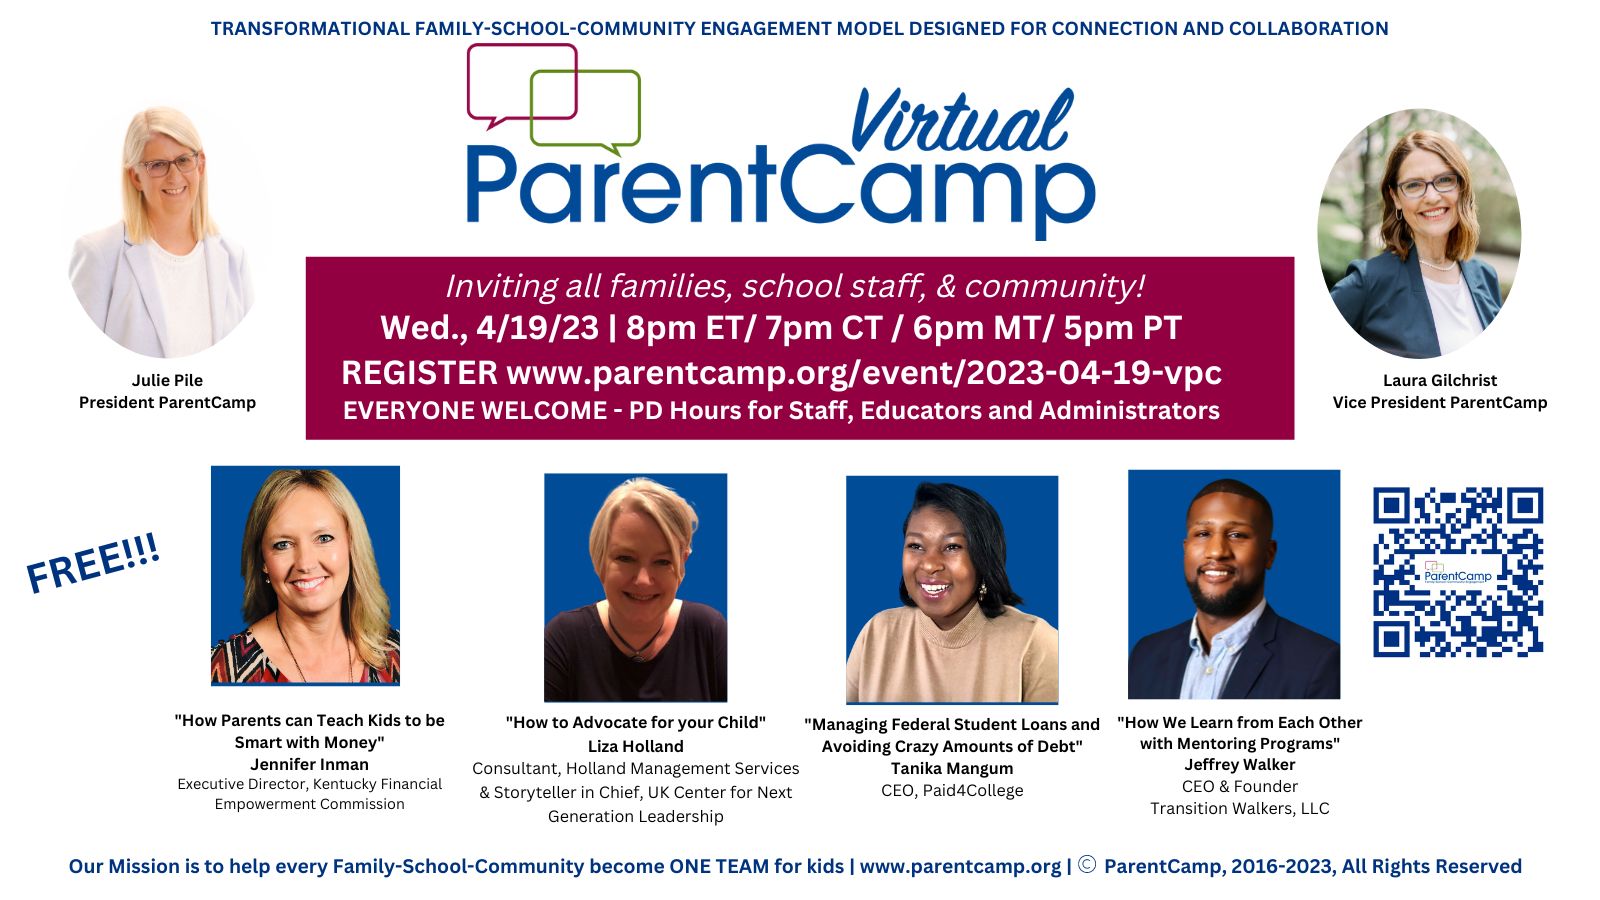 Virtual ParentCamp is set for April 19